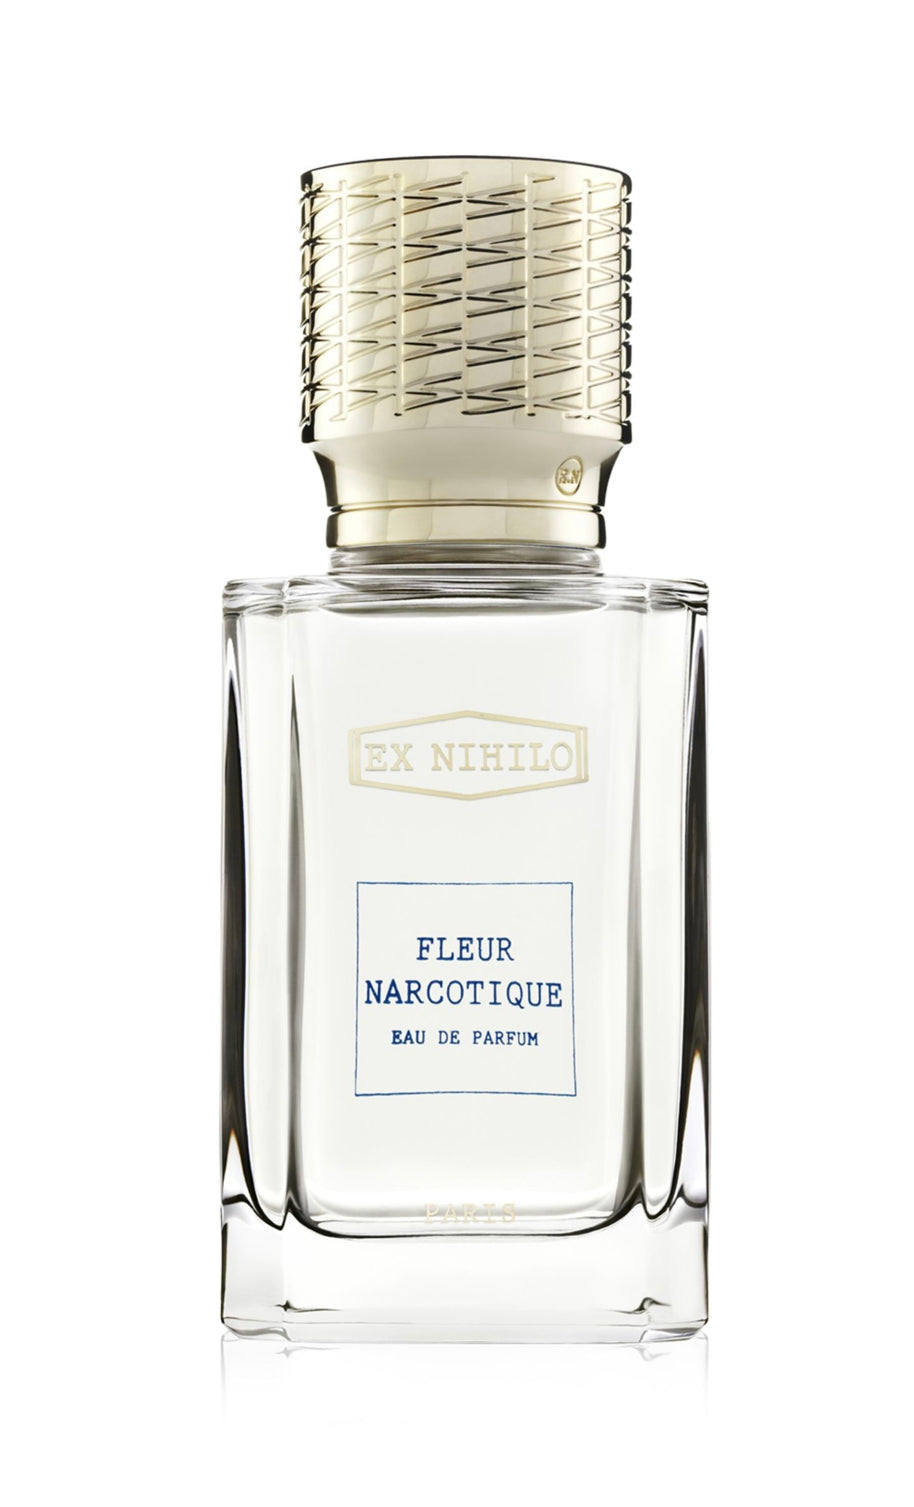 Ex Nihilo Fleur Narcotique Eau De Parfum Samples